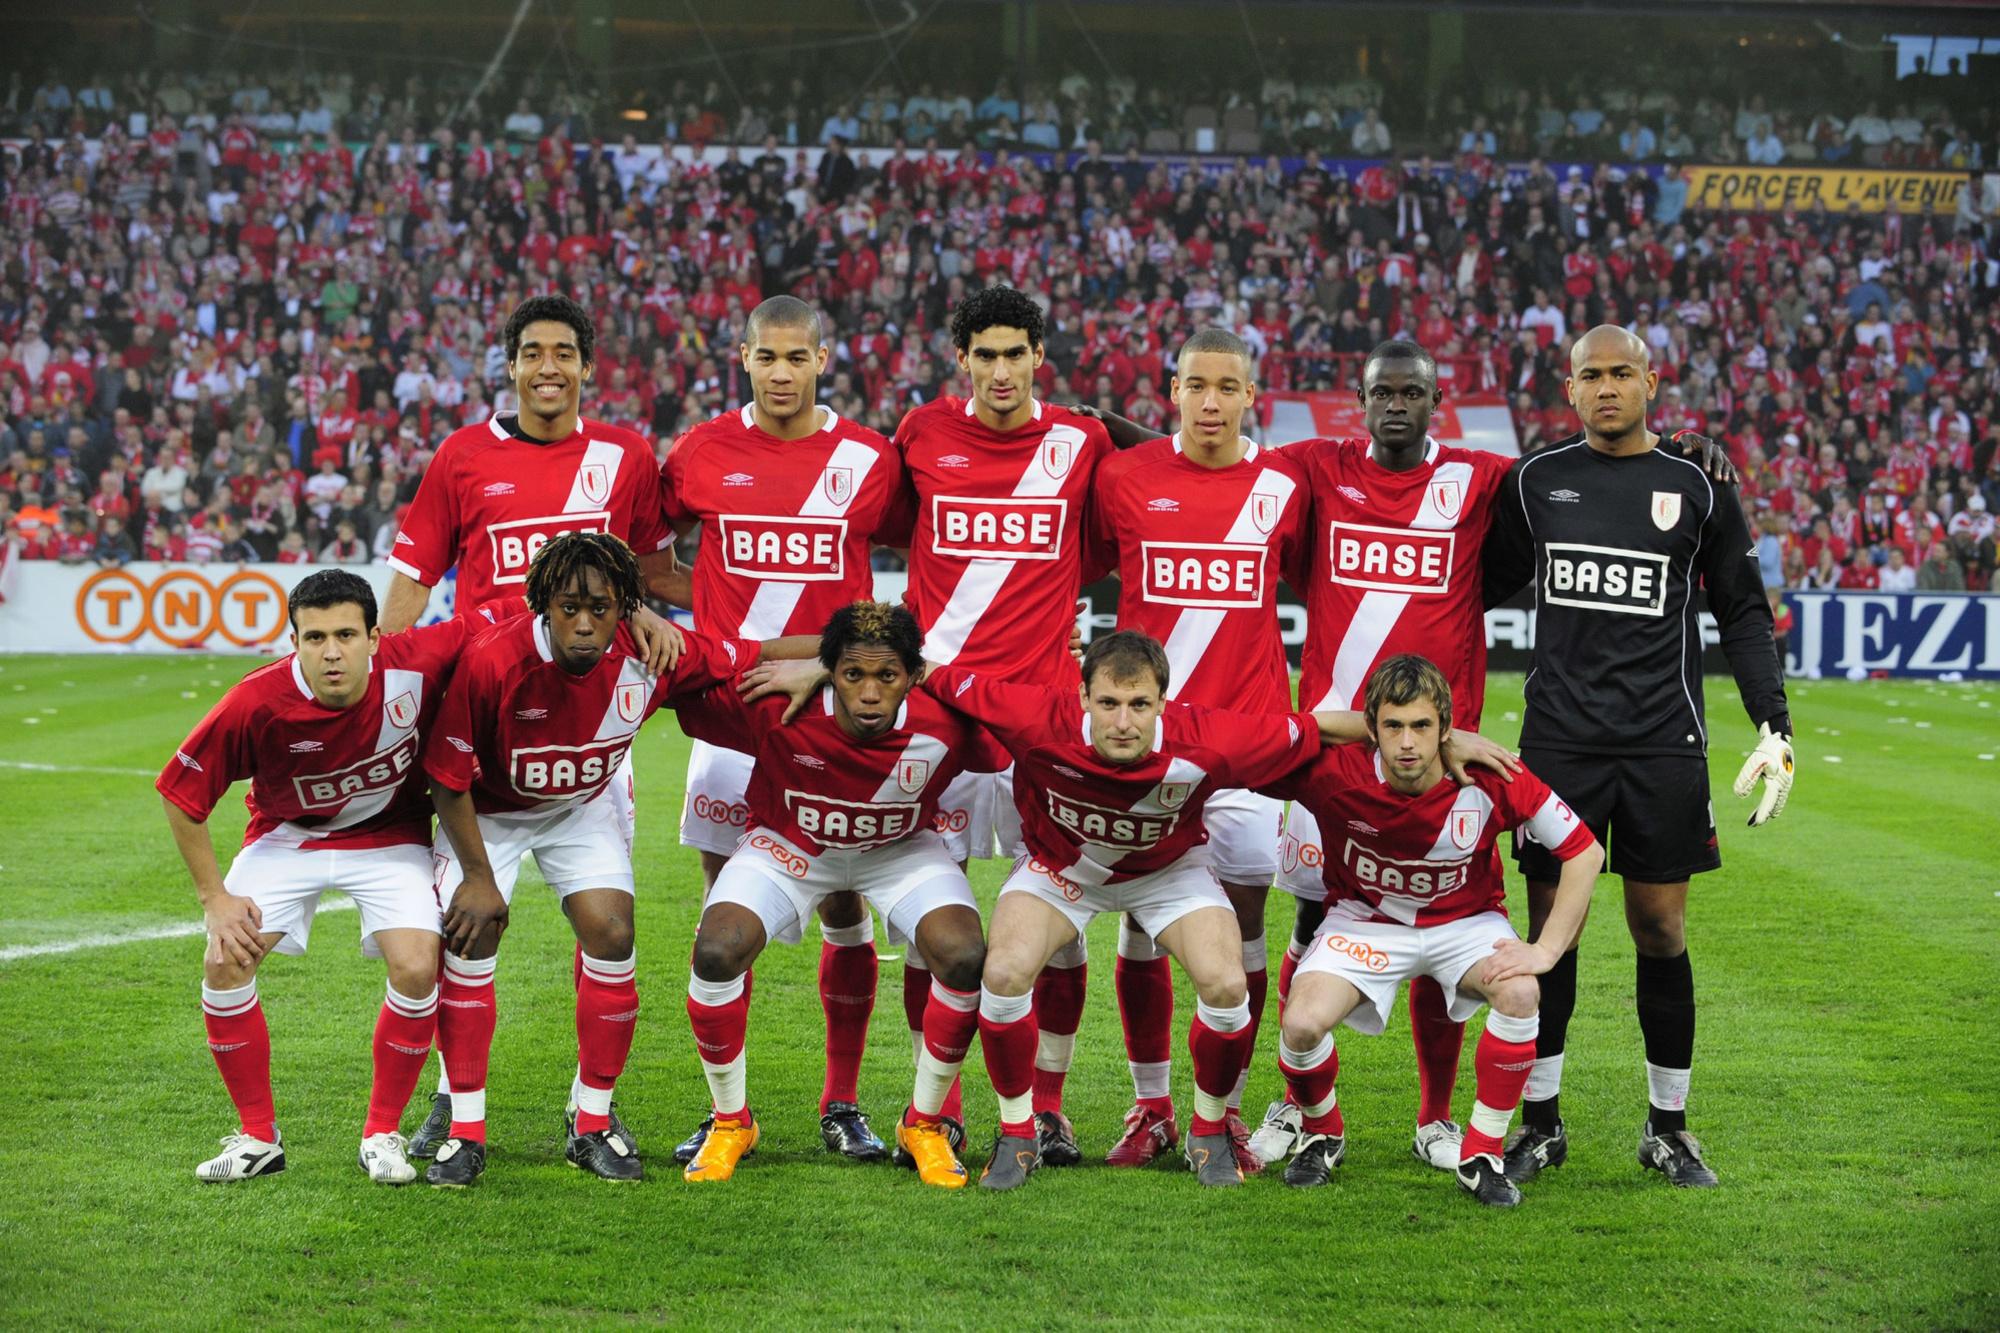 Le onze du base du Standard ce jour-là: -En haut (de gauche à droite): Dante, Onyewu, Fellaini, Witsel, Sarr, Espinoza. -En bas (de gauche à droite): Camozzato, Goreux, Mbokani, Jovanovic, Defour.